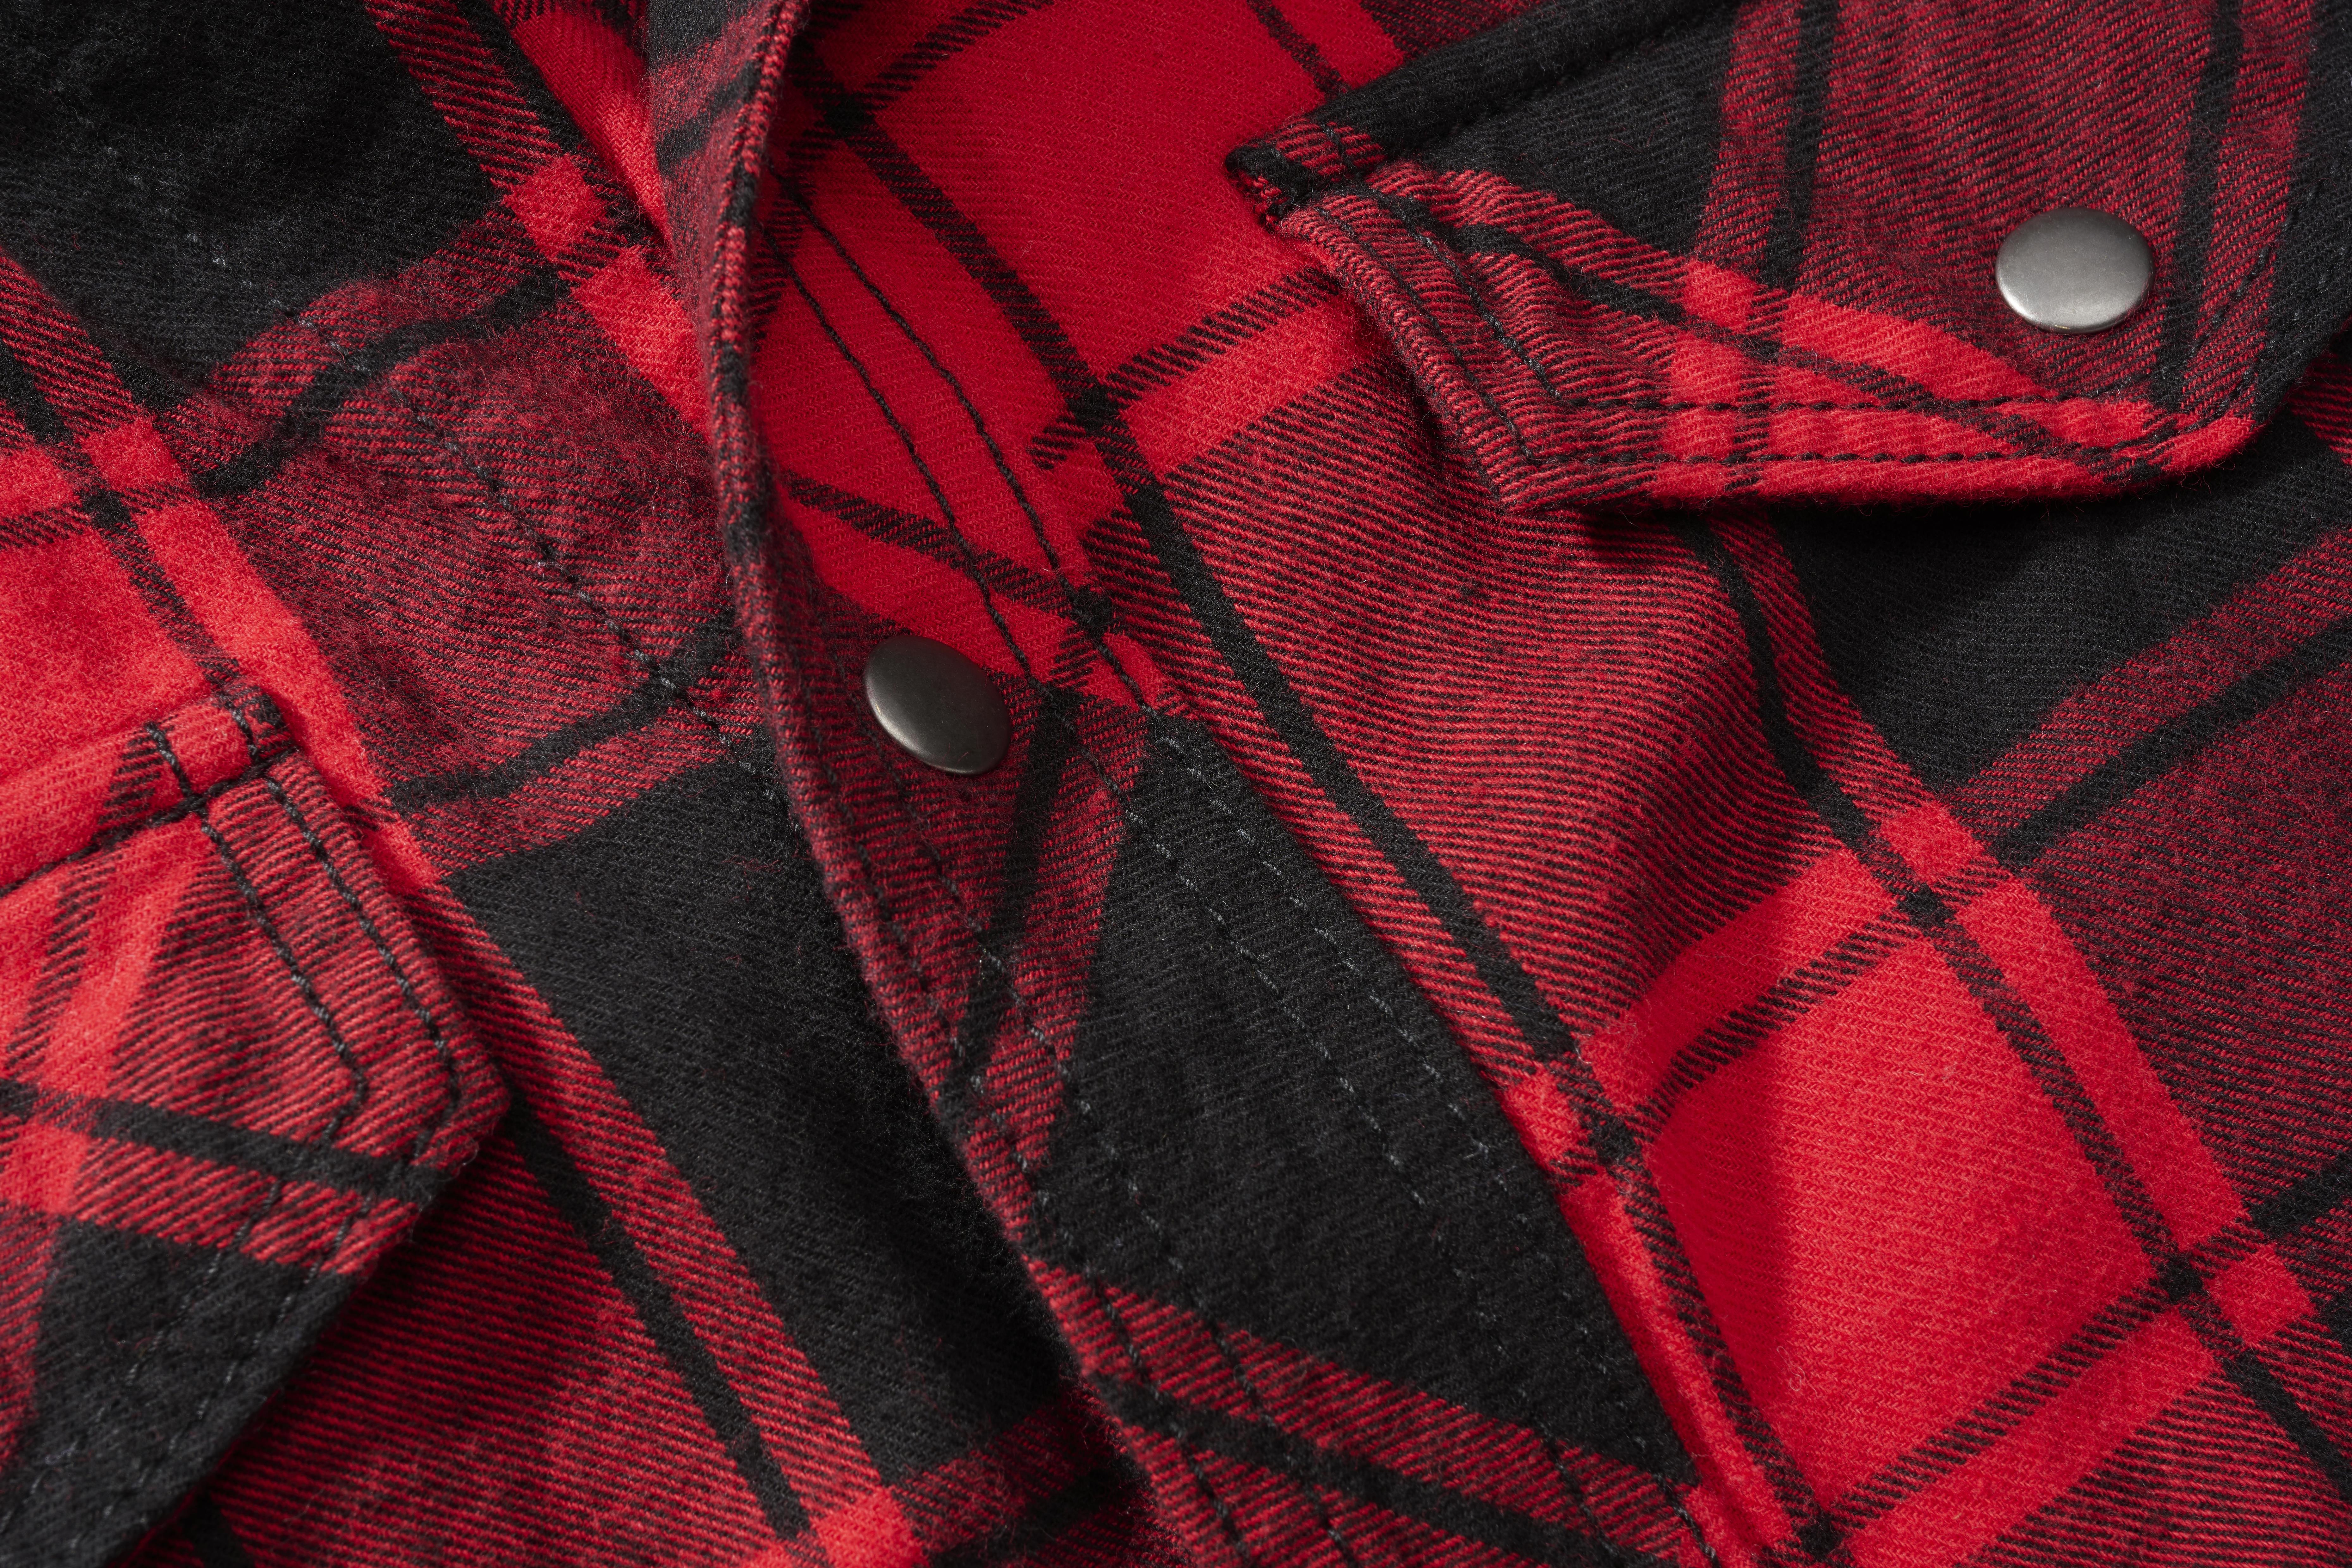 Brandit Checkshirt, Farbe rot/schwarz, Größe 5XL